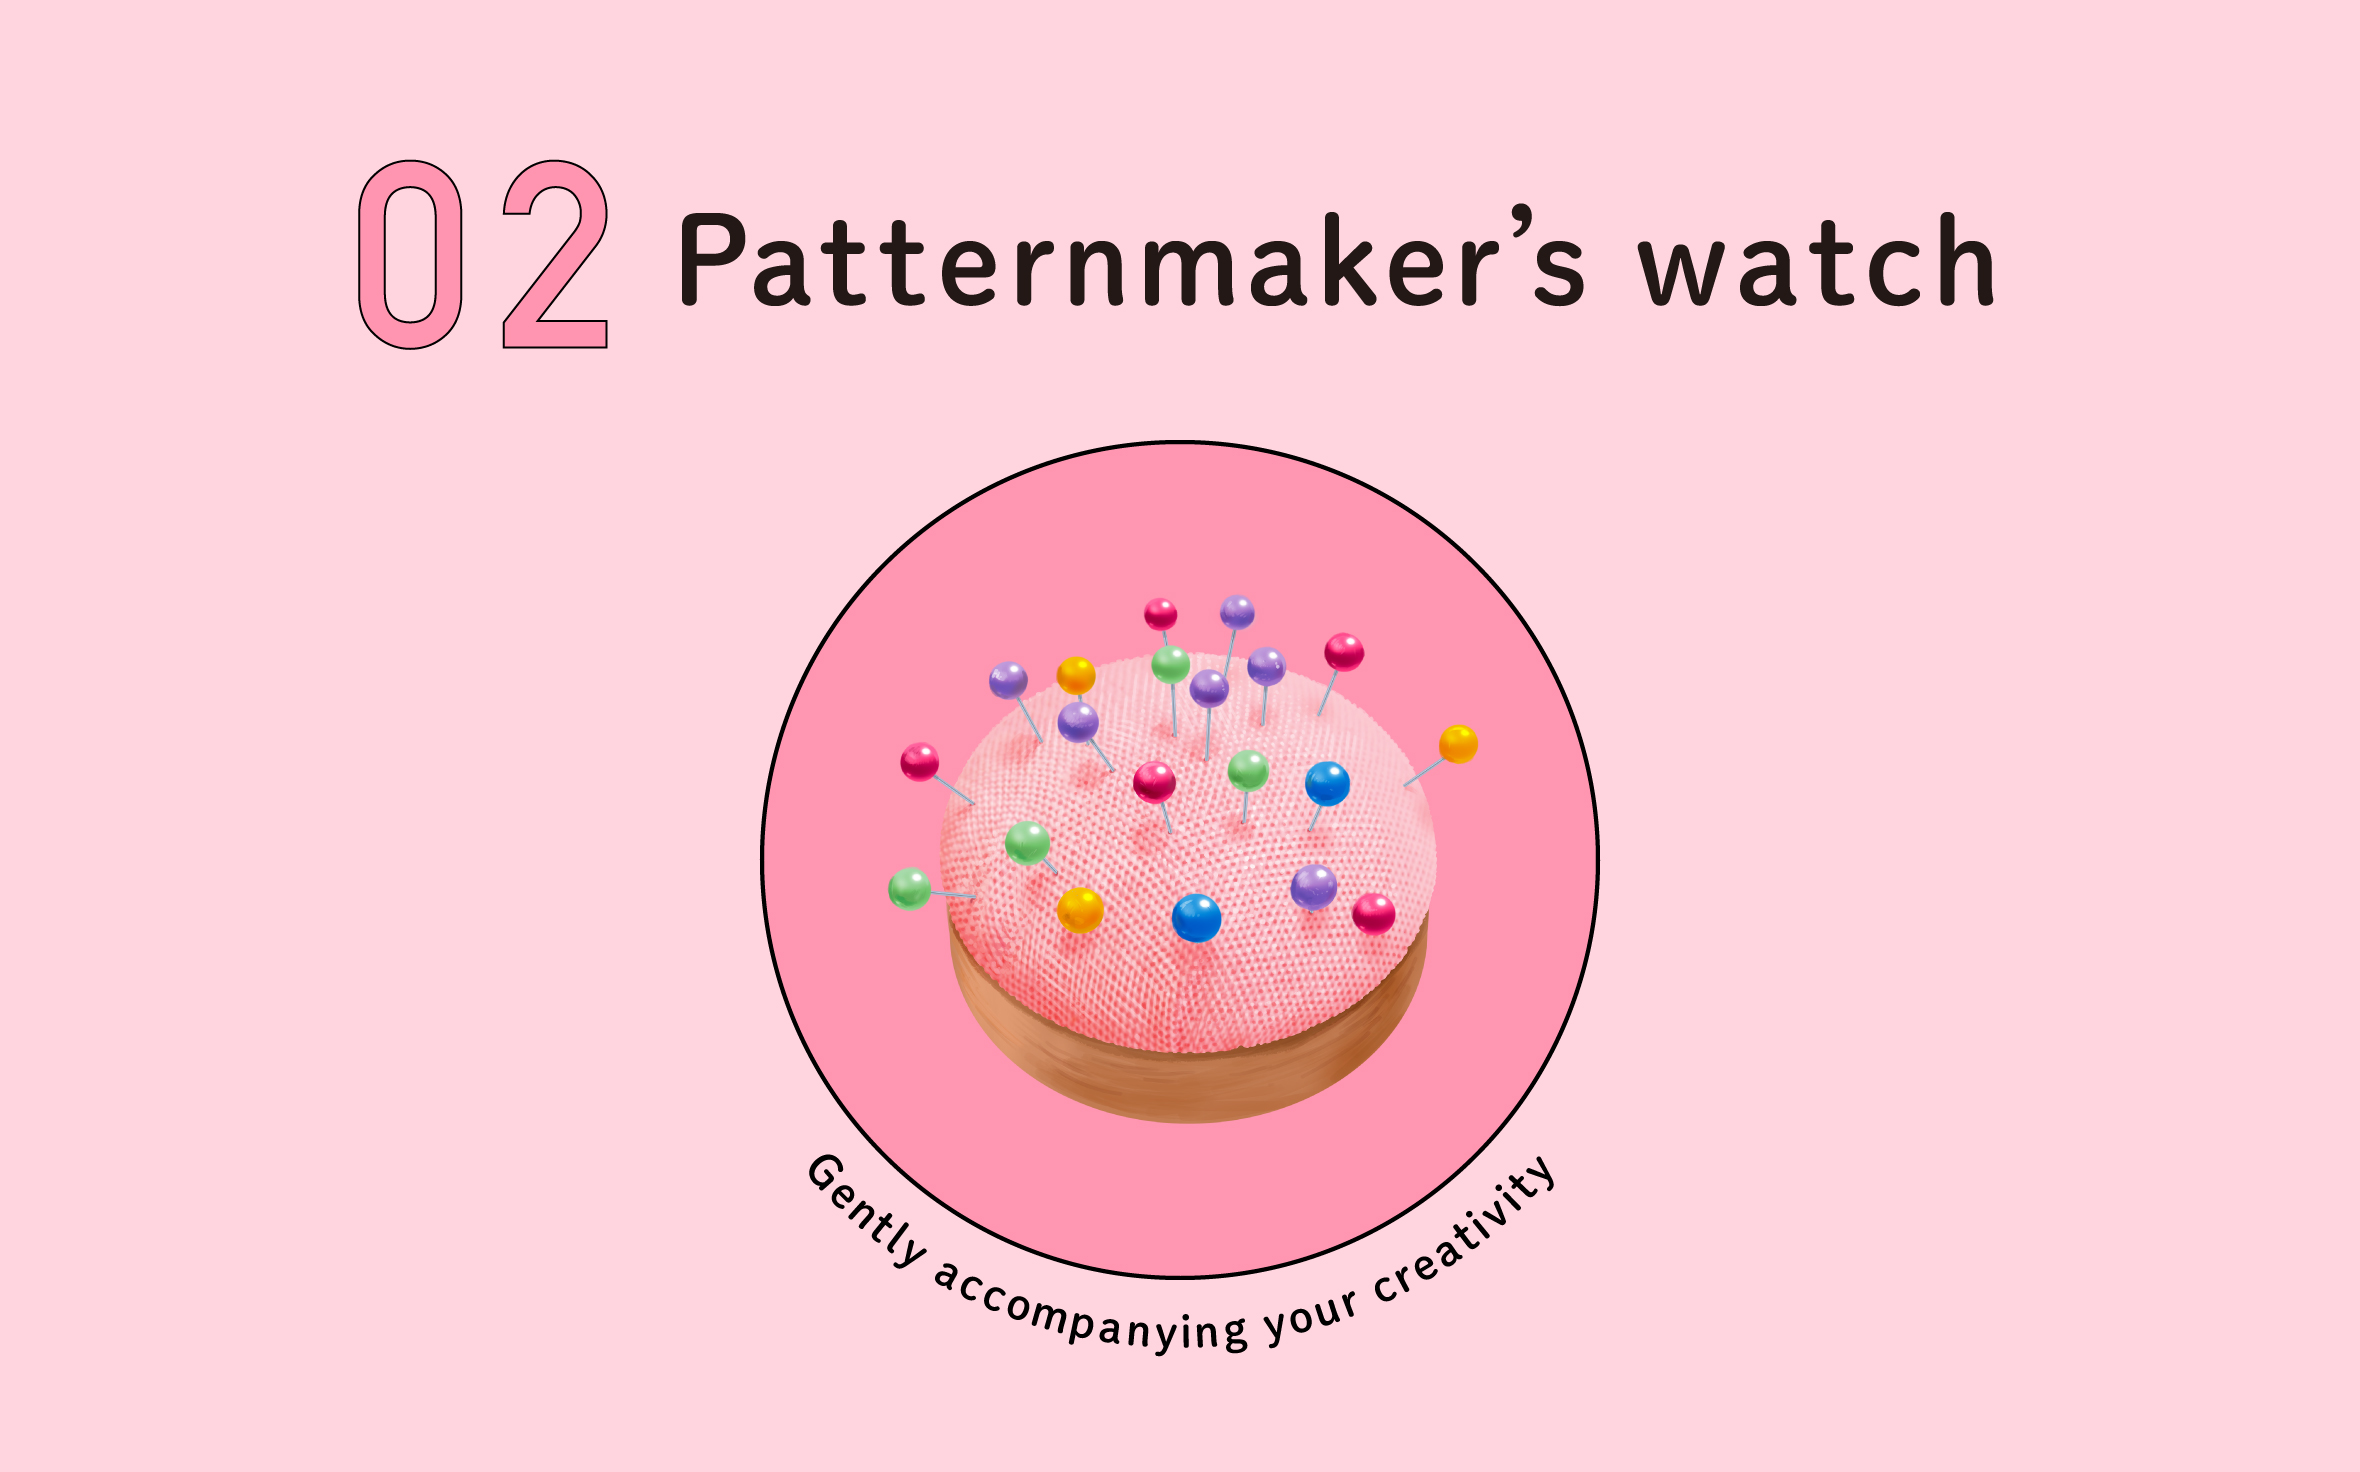 Patternmaker's watch